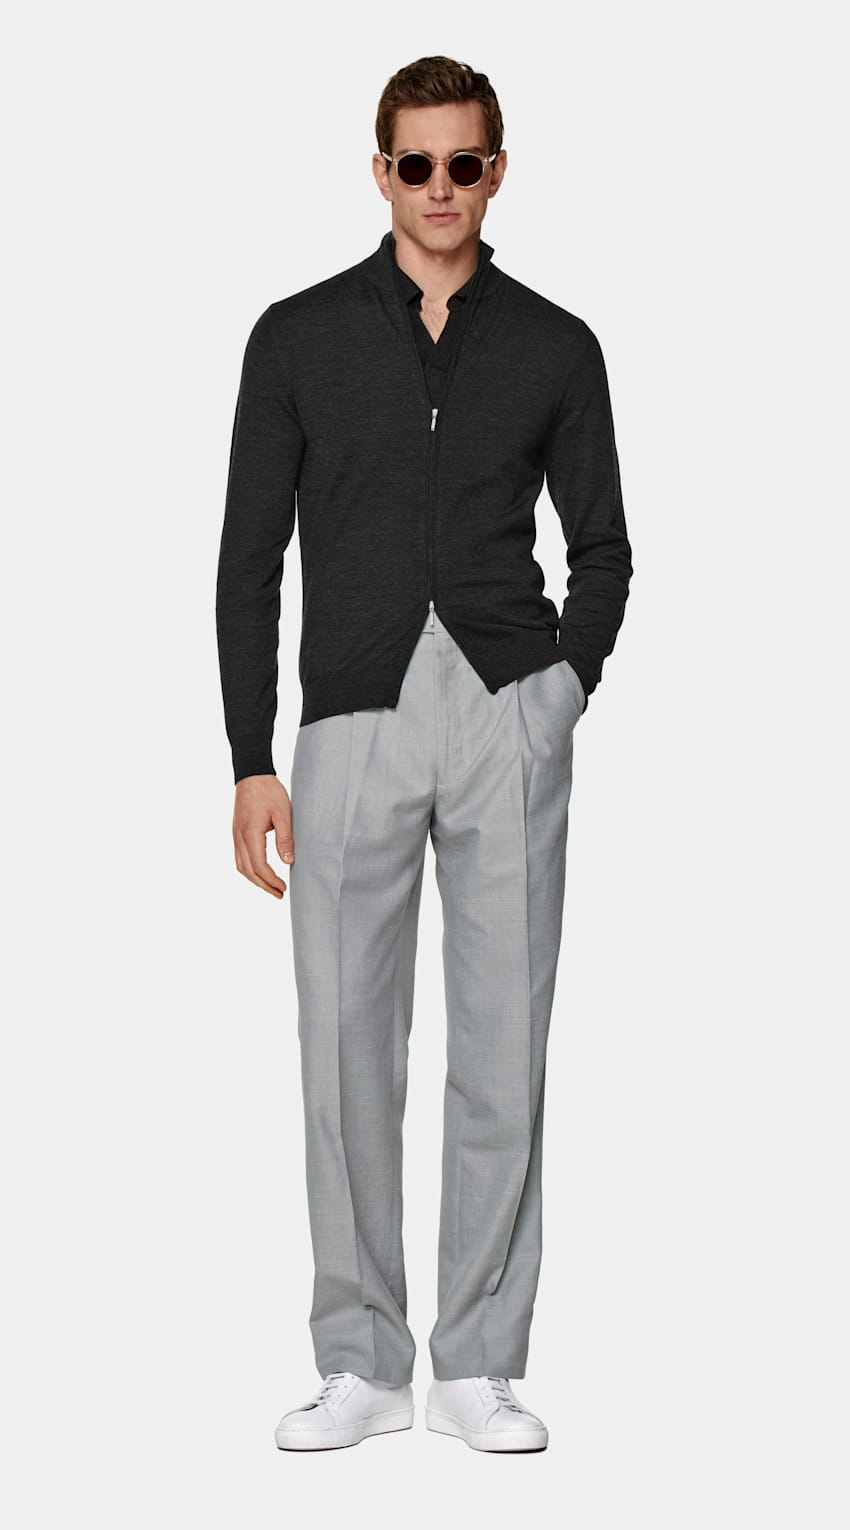 SUITSUPPLY Pure Australian Merino Wool Dark Grey Zip Cardigan